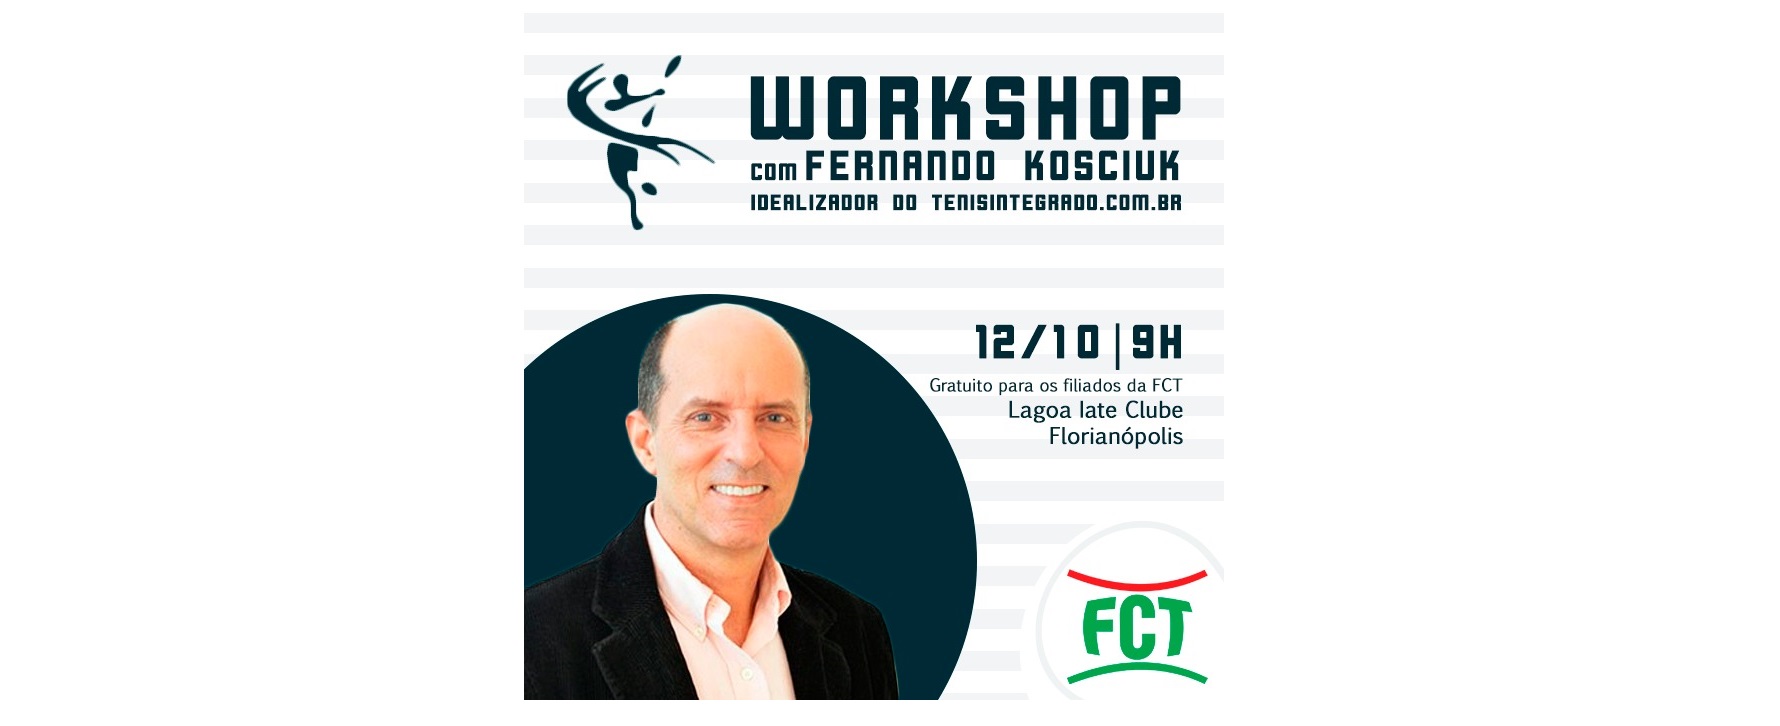 WORKSHOP FCT - COMO UTILIZAR O TENISINTEGRADO